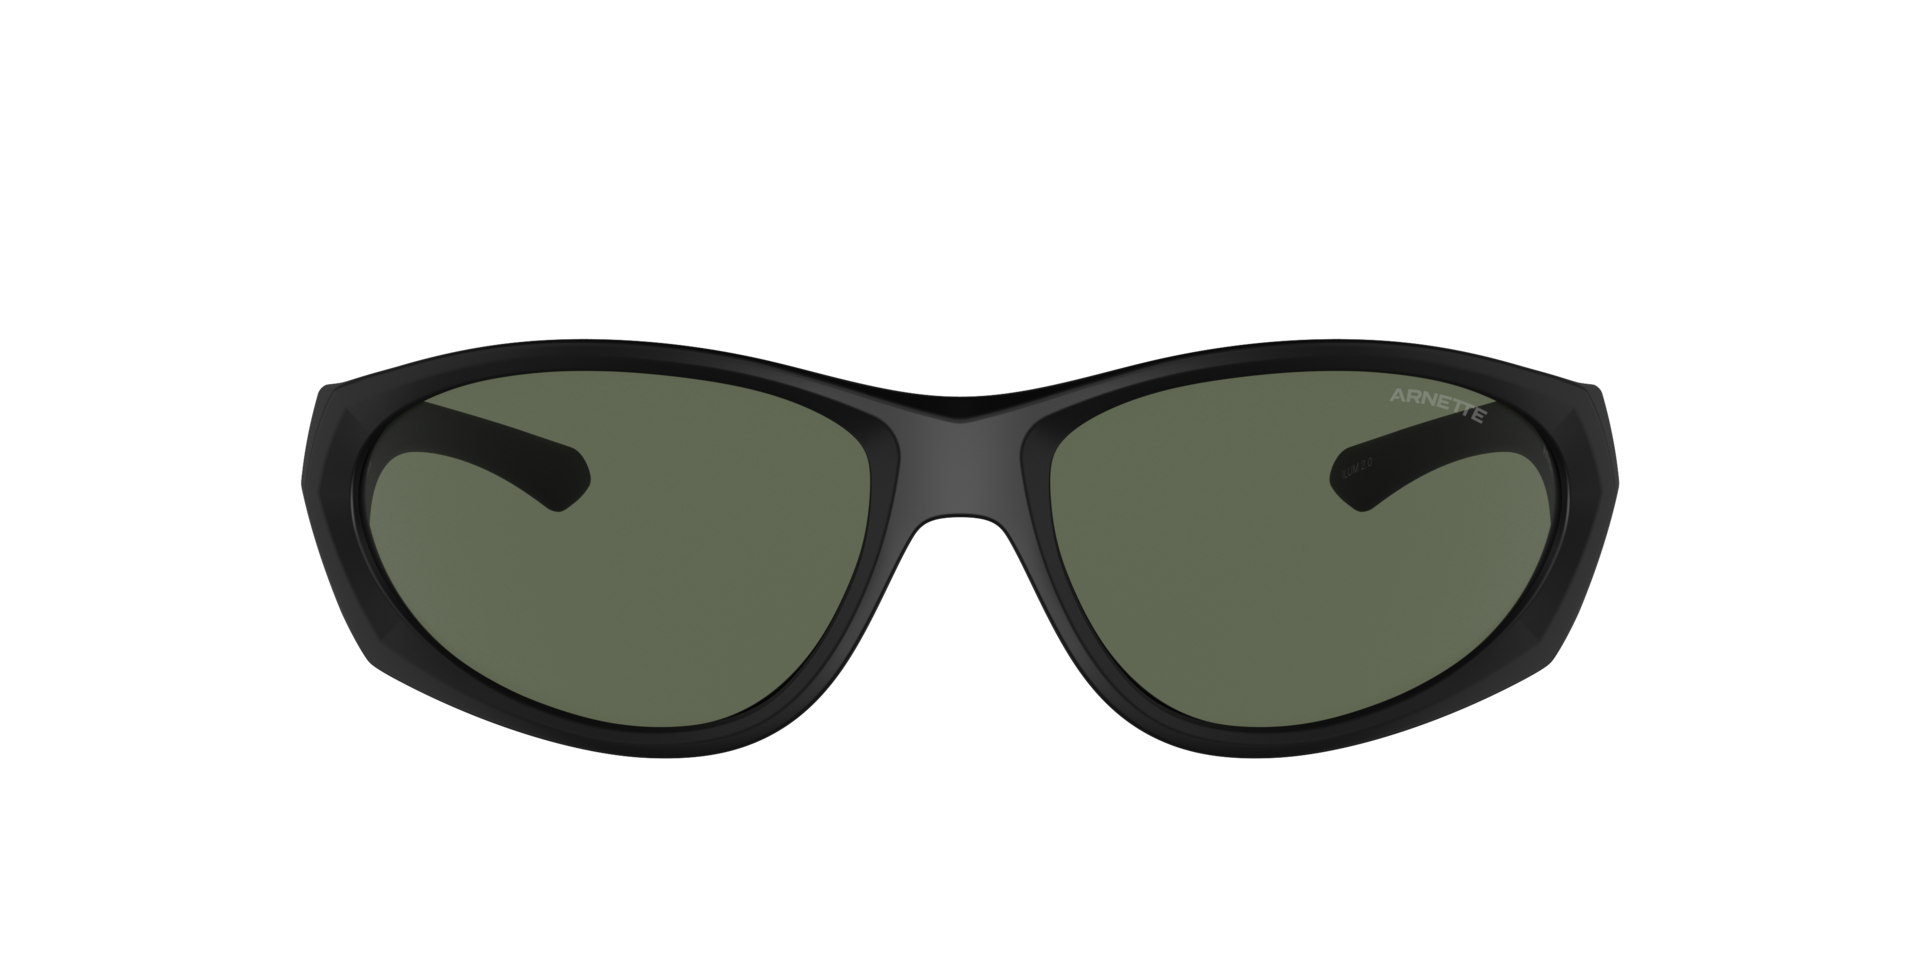 Das Bild zeigt die Sonnenbrille AN4342 275871 von der Marke Arnette in schwarz.